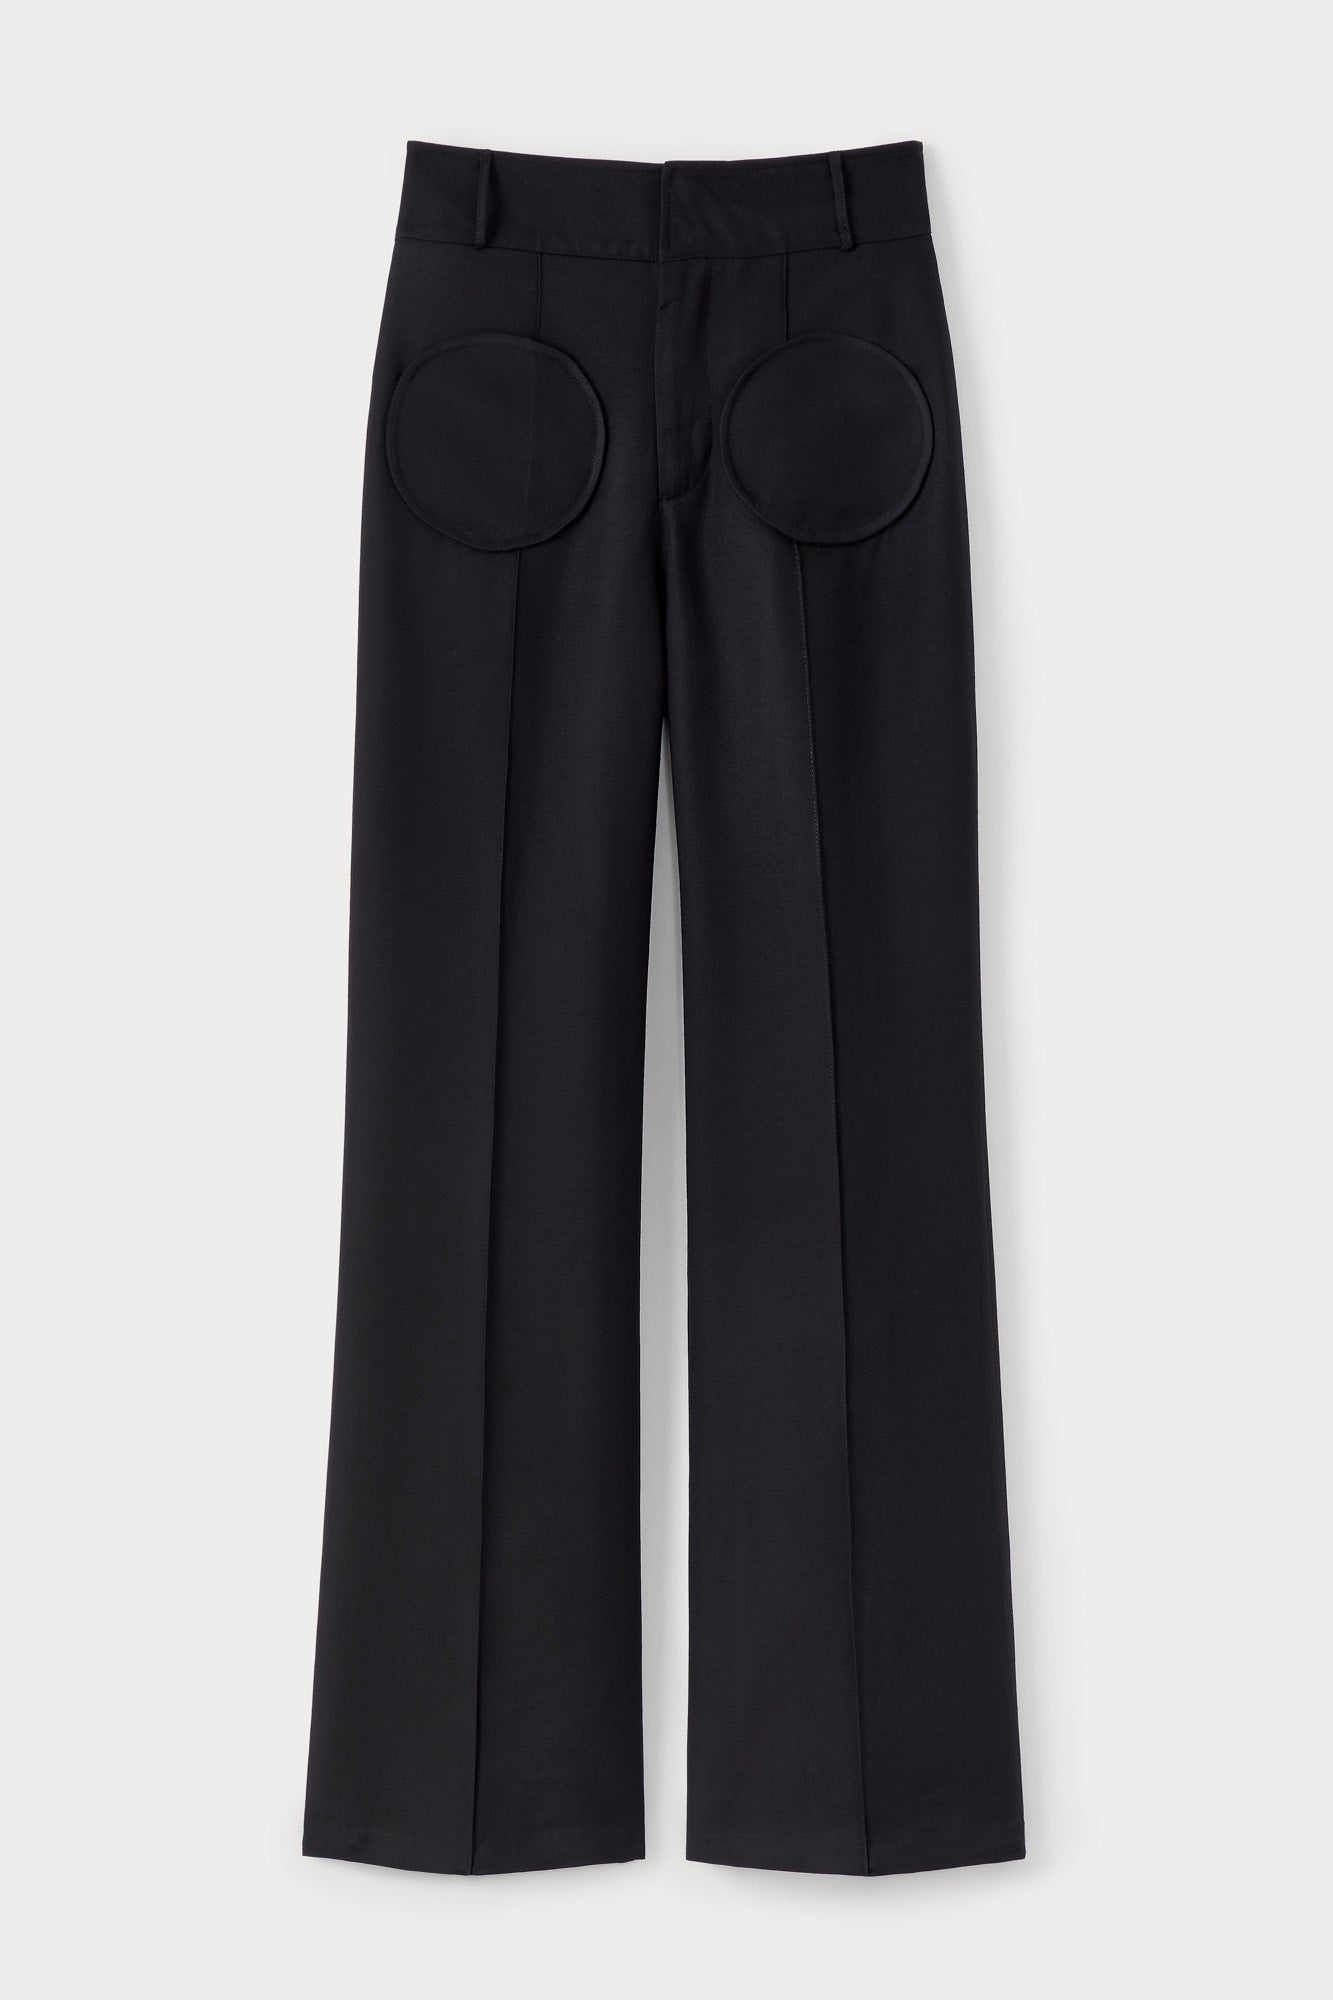 Pantalon évasé noir avec détail de poche circulaire